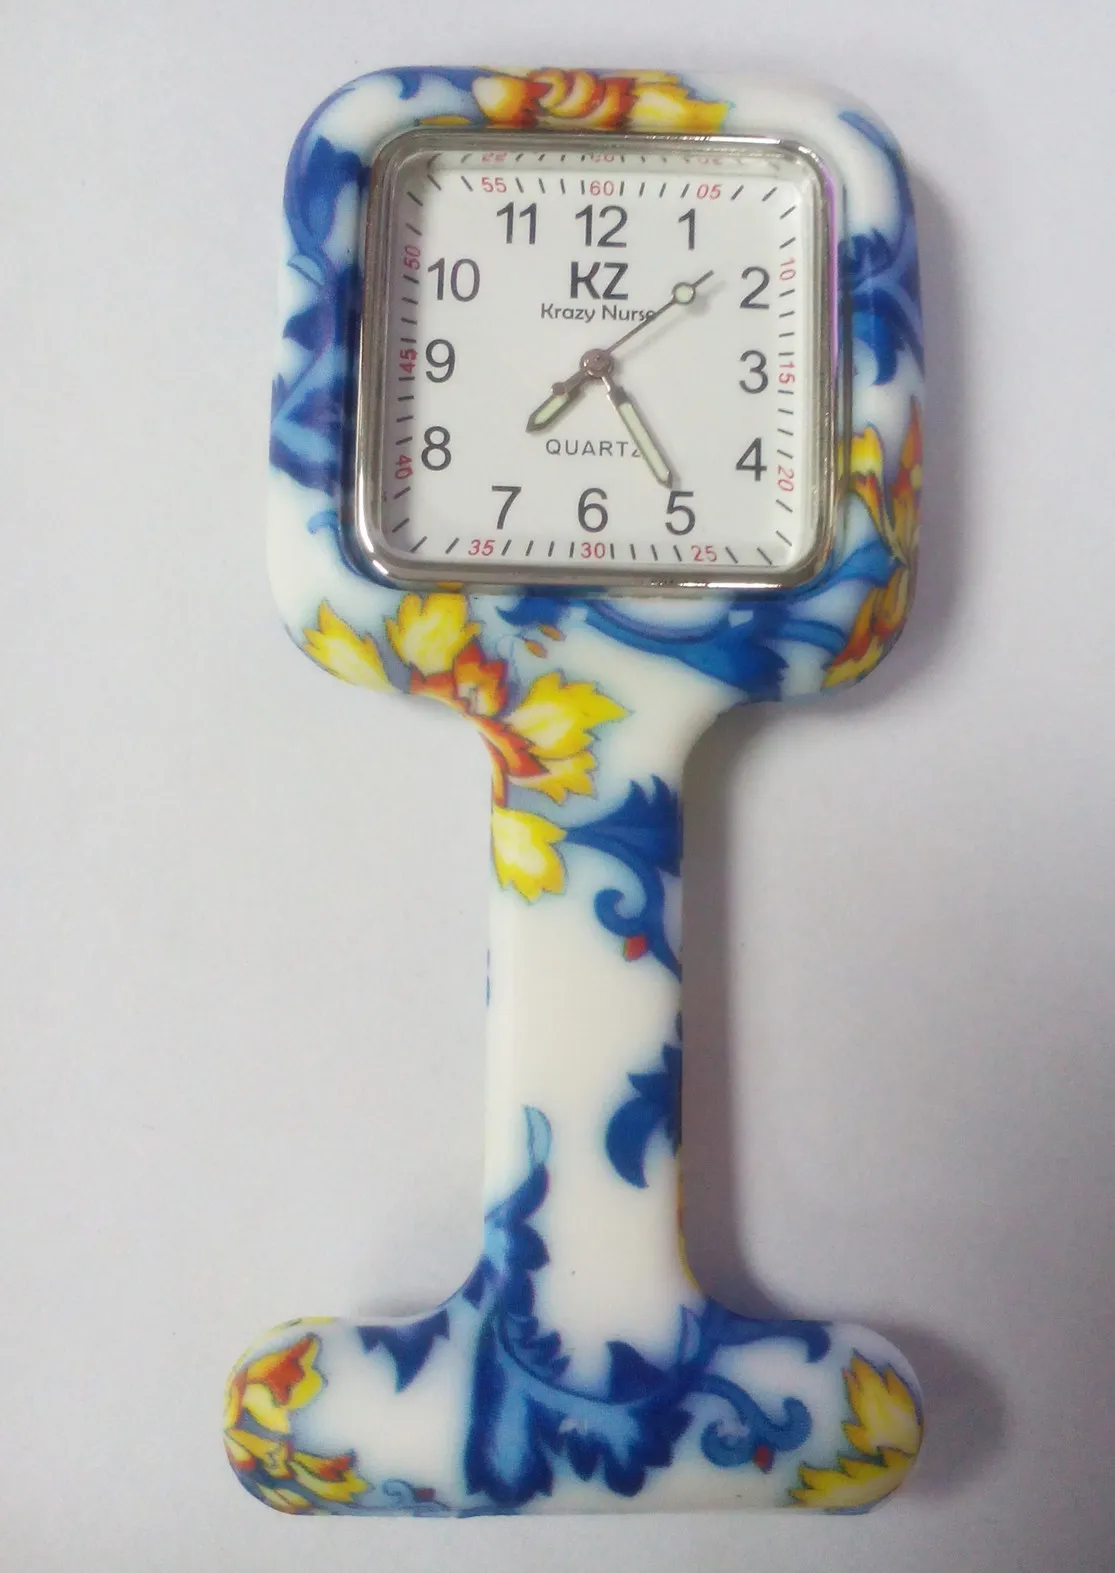 Atacado 50 pçs / lote 26 cores Quadrados Impressões Coloridas Silicone Enfermeira relógio de Bolso Relógios Médico Fob Relógio De Quartzo Caçoa o Presente Relógios NW013